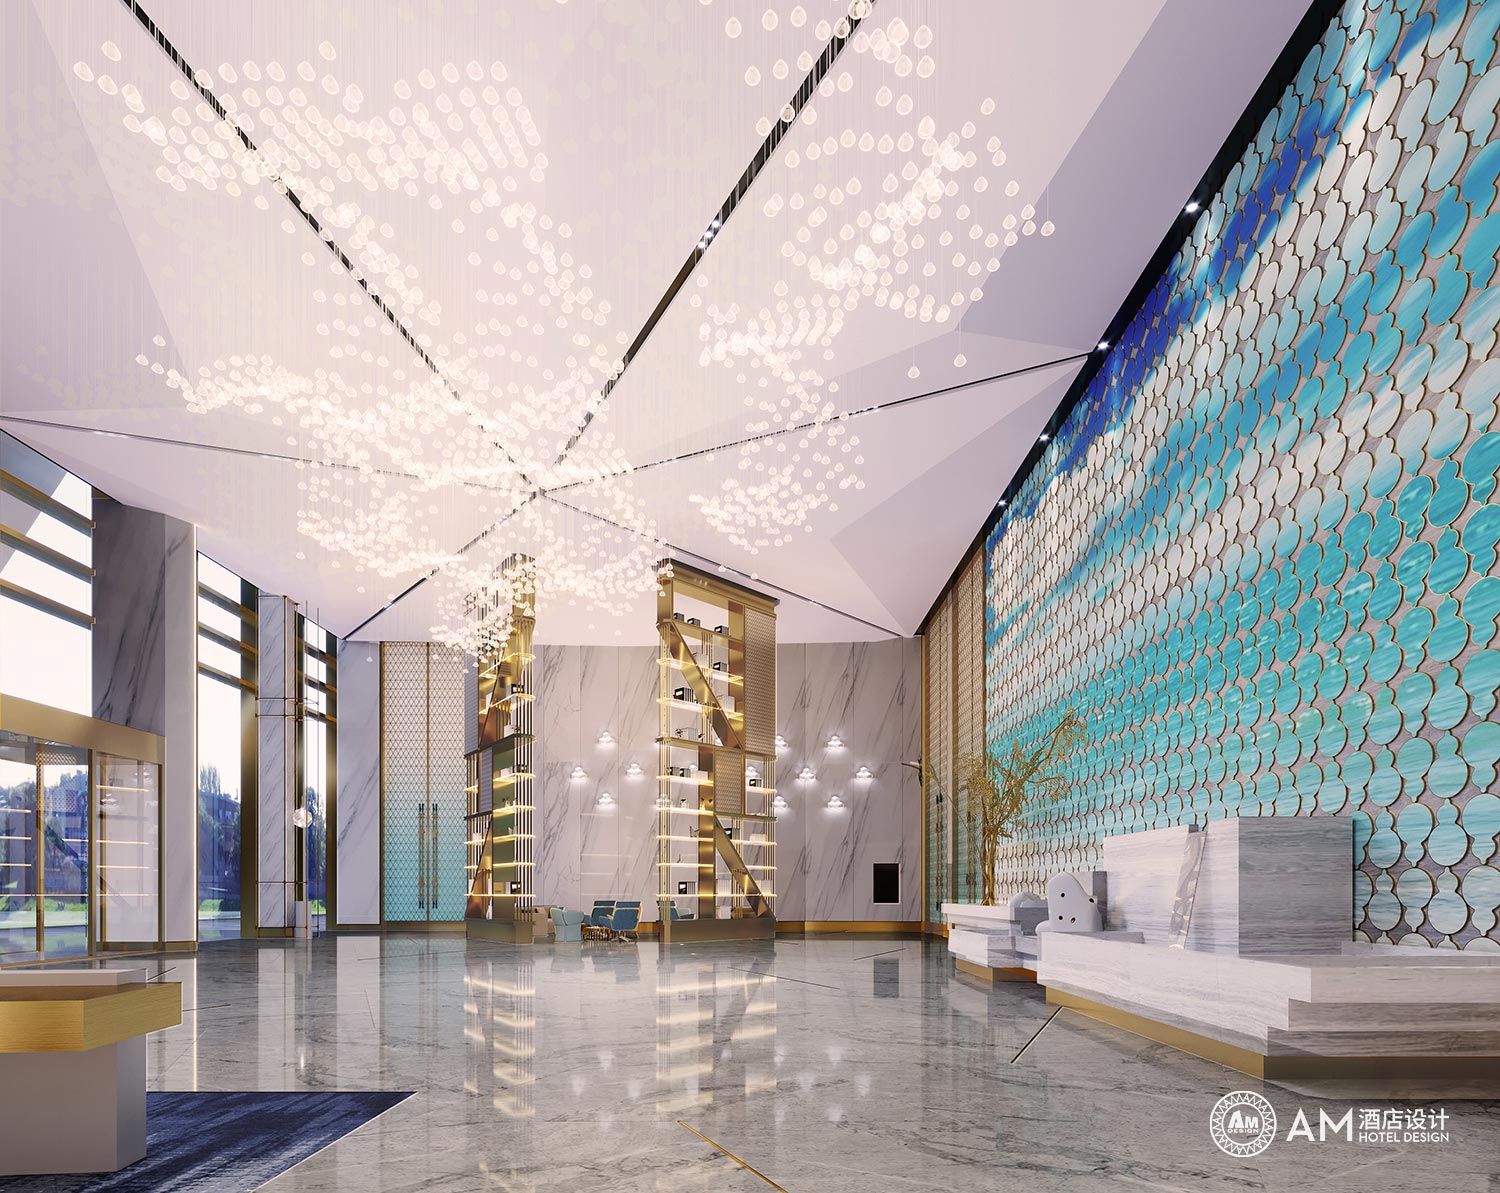 AM DESIGN | Hall design of conference center of mega Hotel